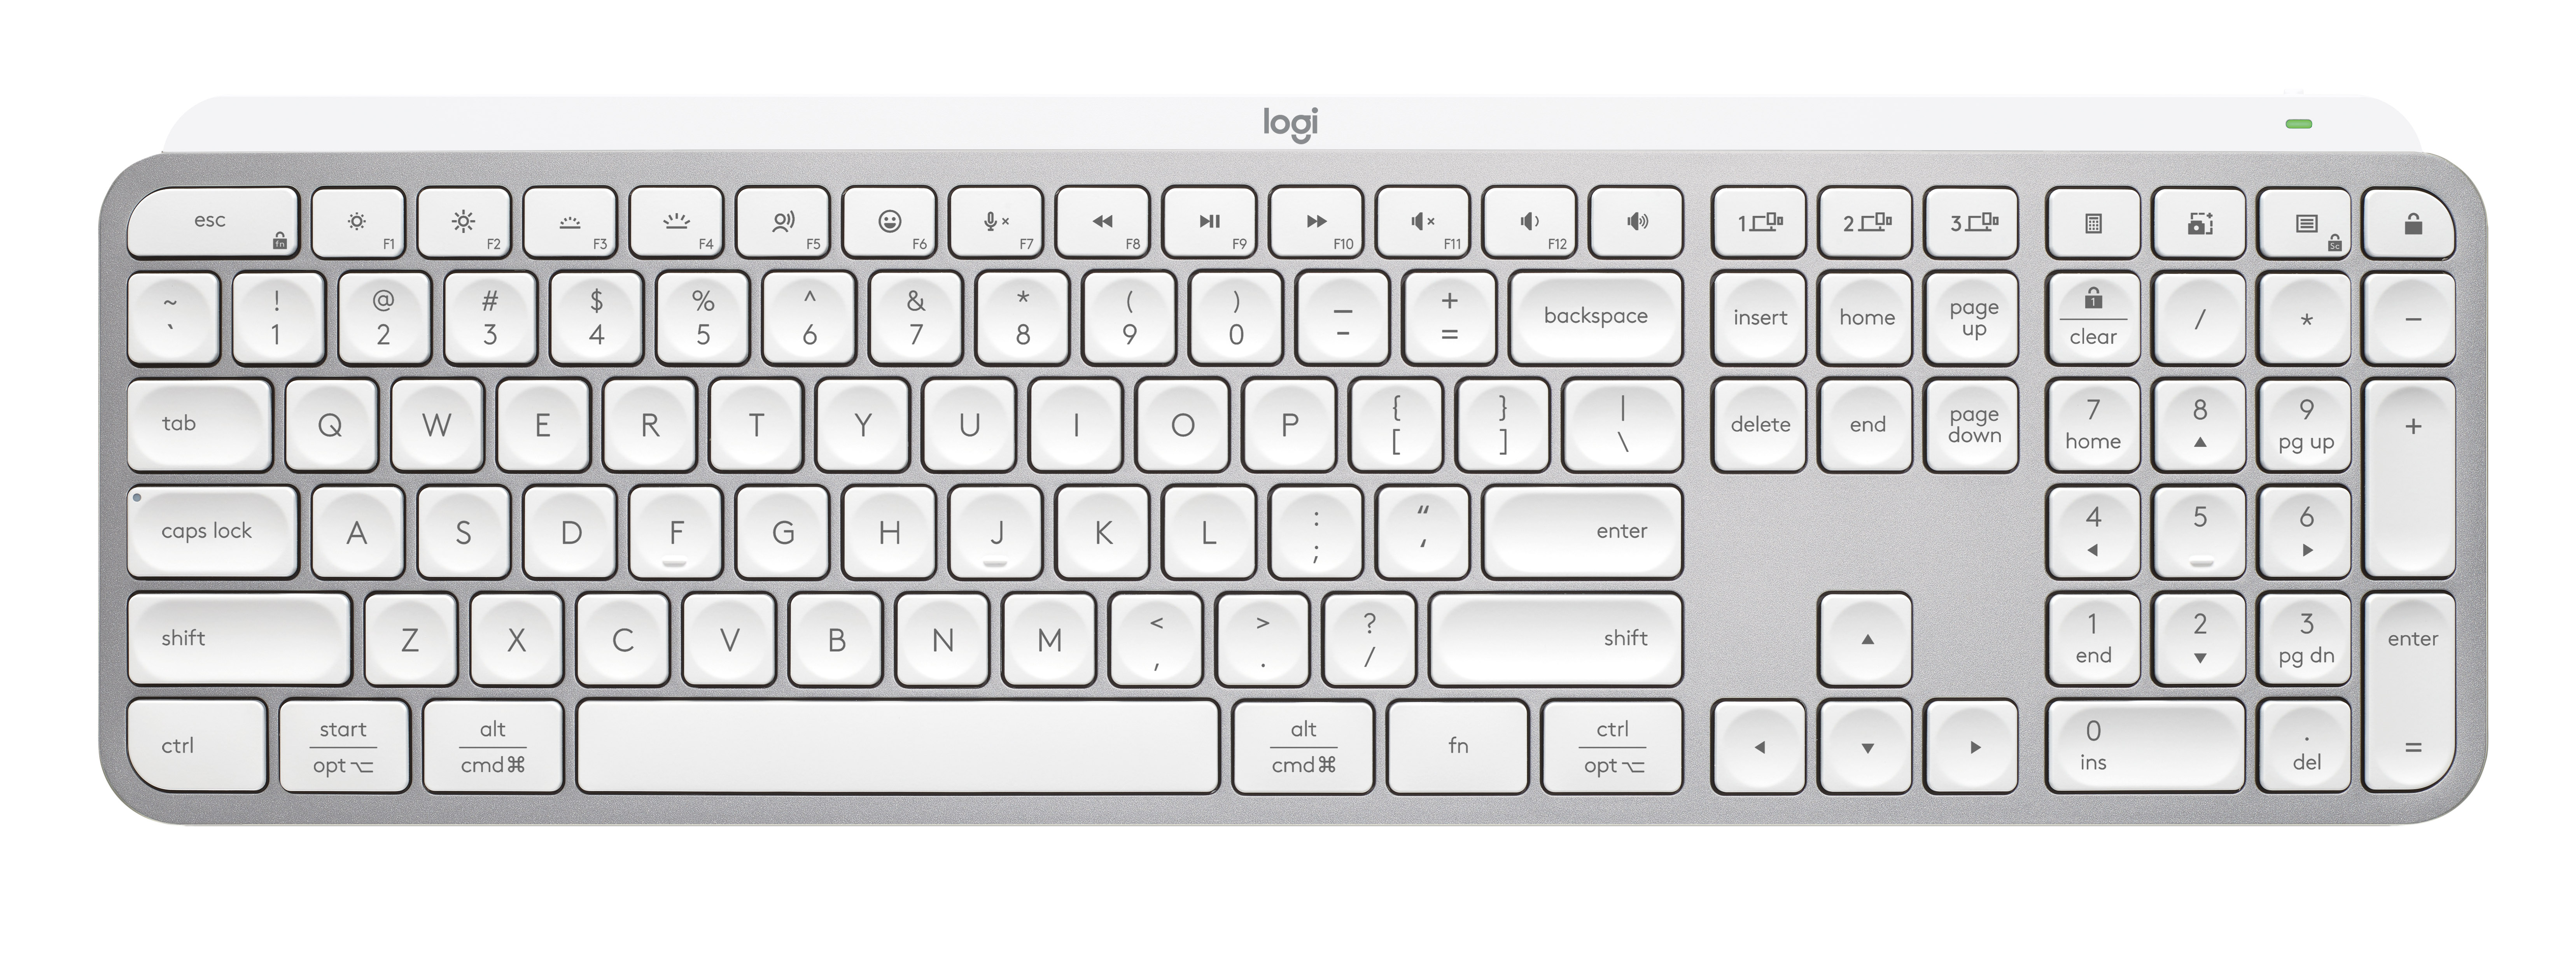 لوحة المفاتيح اللاسلكية Logitech MX Keys S - أفضل لوحة مفاتيح لاسلكية لسطح المكتب بشكل عام 